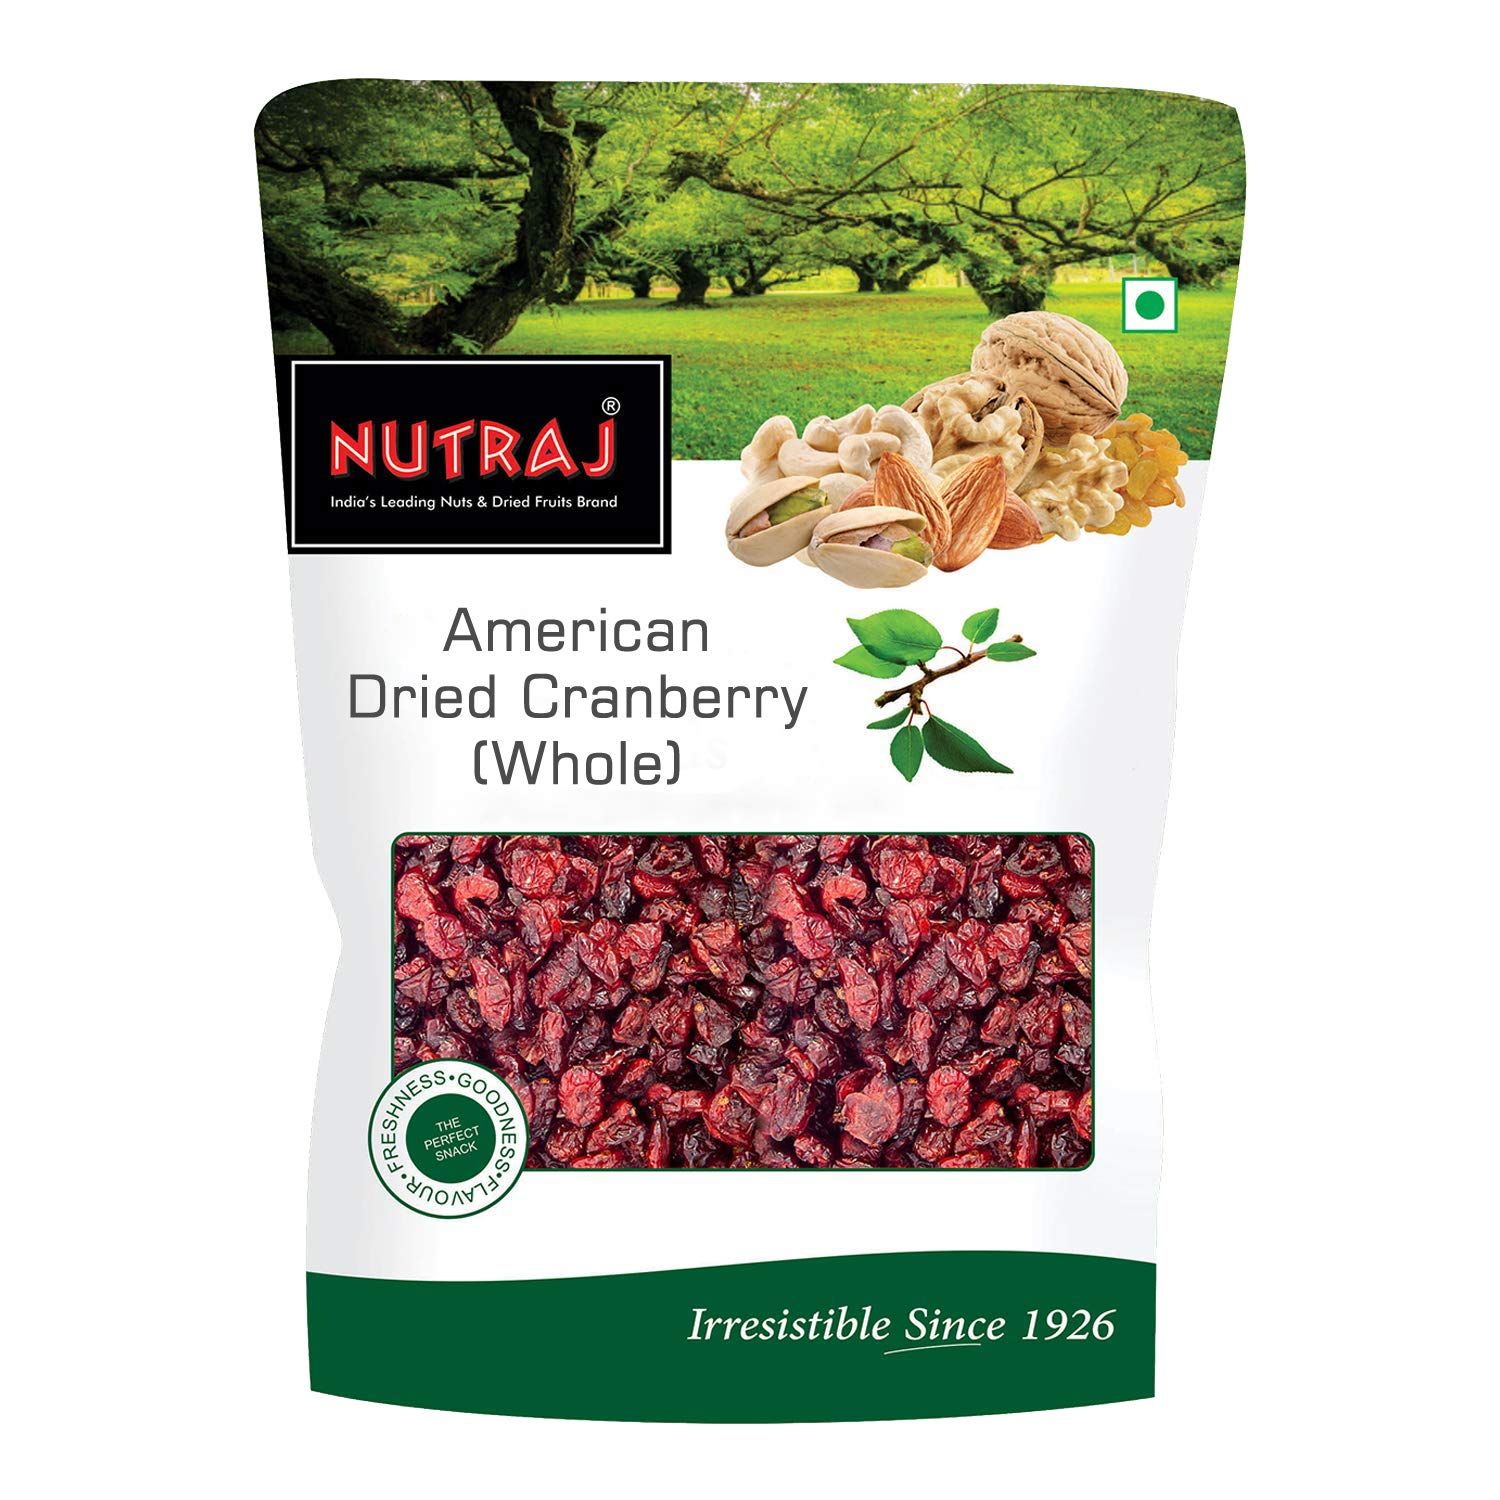 Nutraj Dried American Cranberries Image